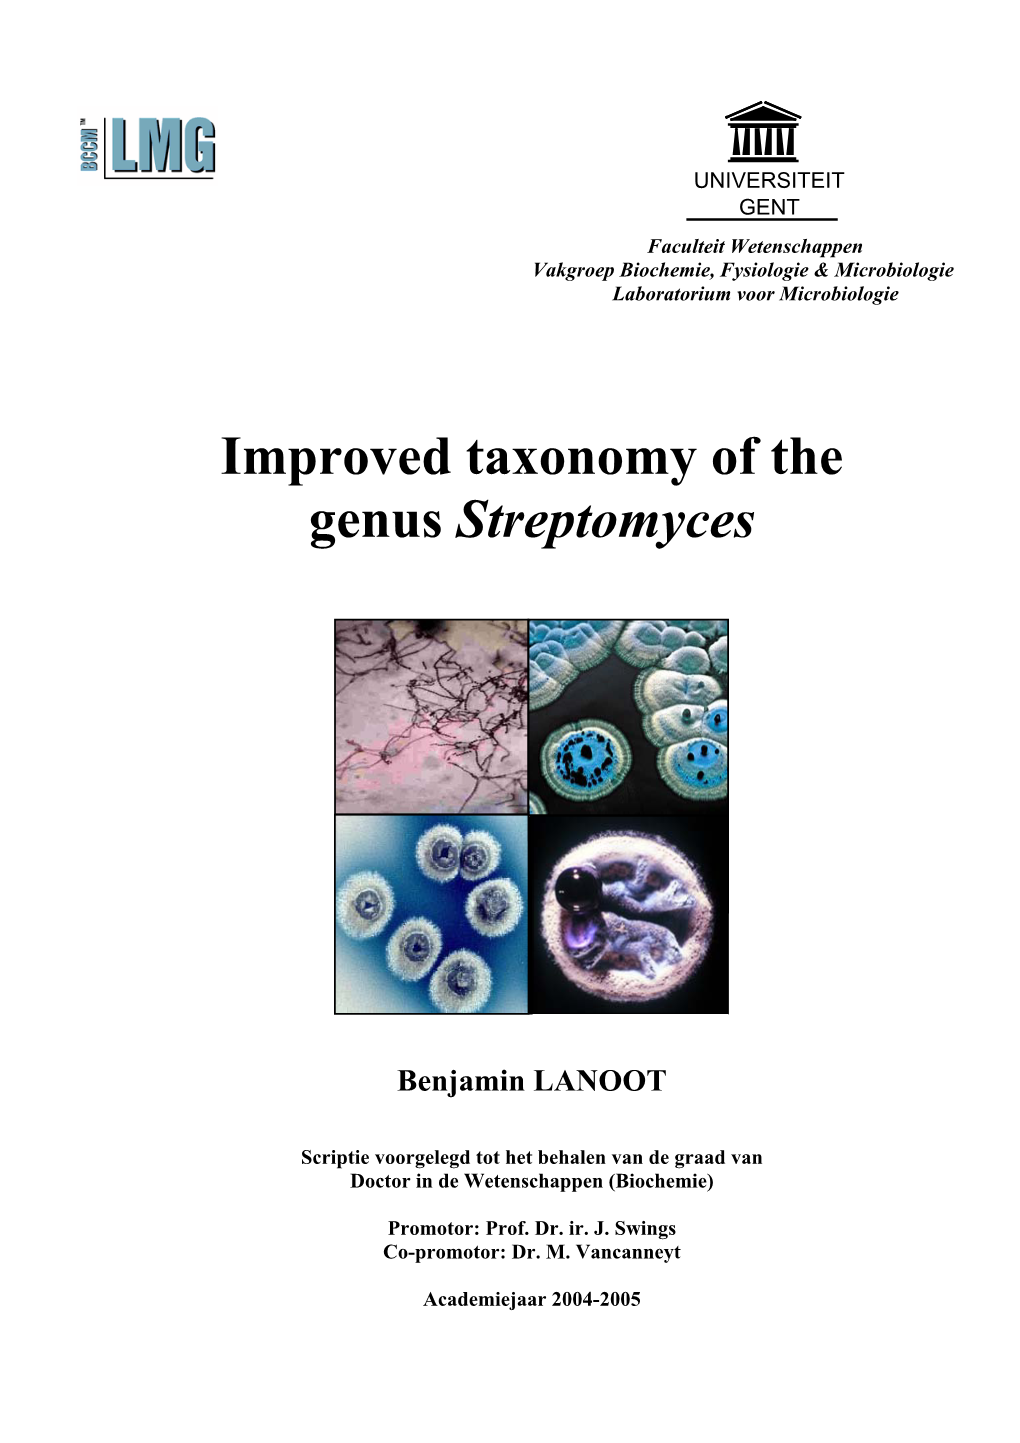 Improved Taxonomy of the Genus Streptomyces